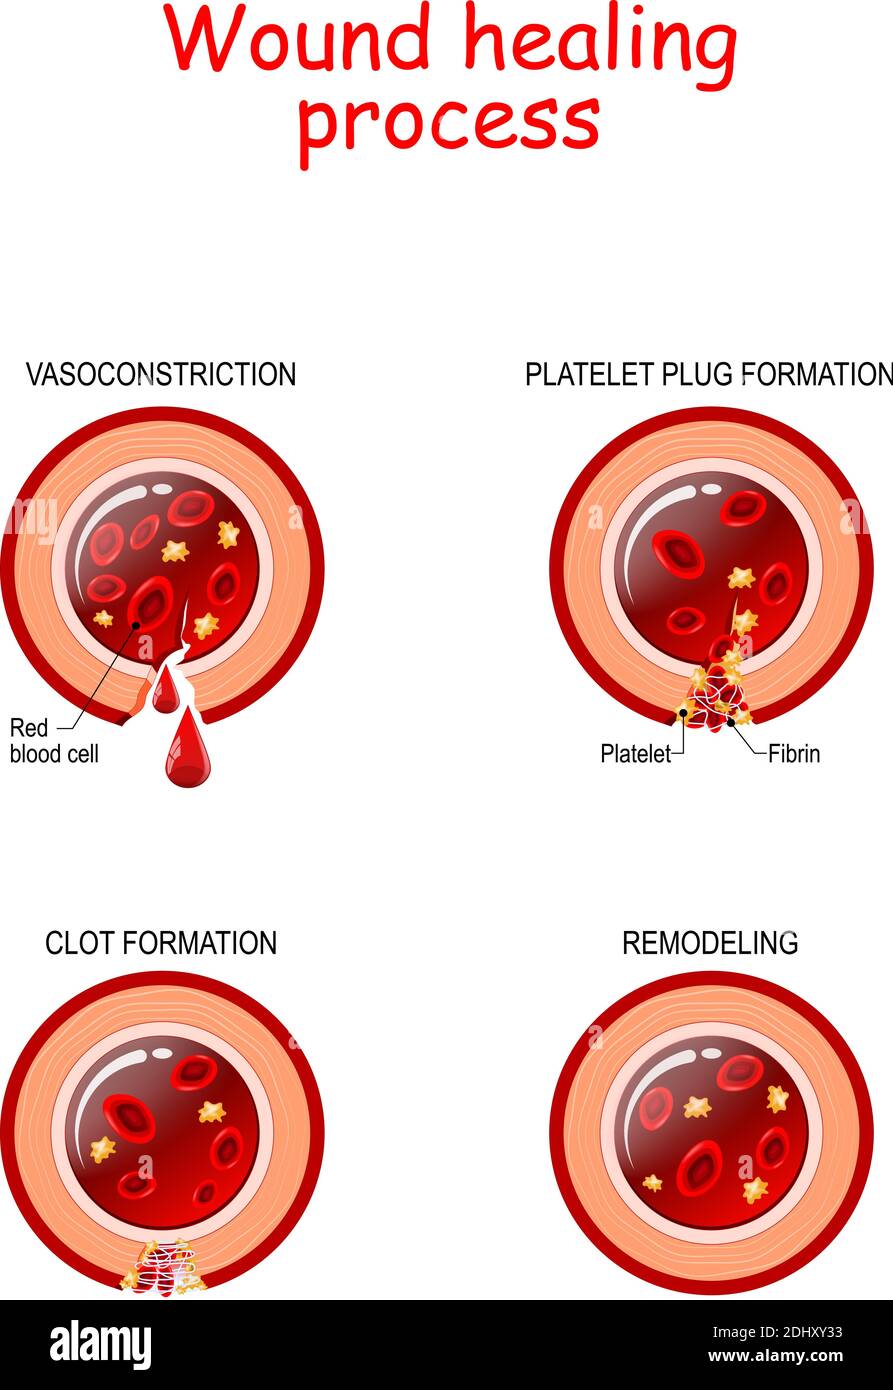 Phasen des Wundheilungsprozesses. Hämostase, entzündliche, proliferative, Reifung und Remodellphase. Querschnitt des Blutgefäßes. Poster Stock Vektor